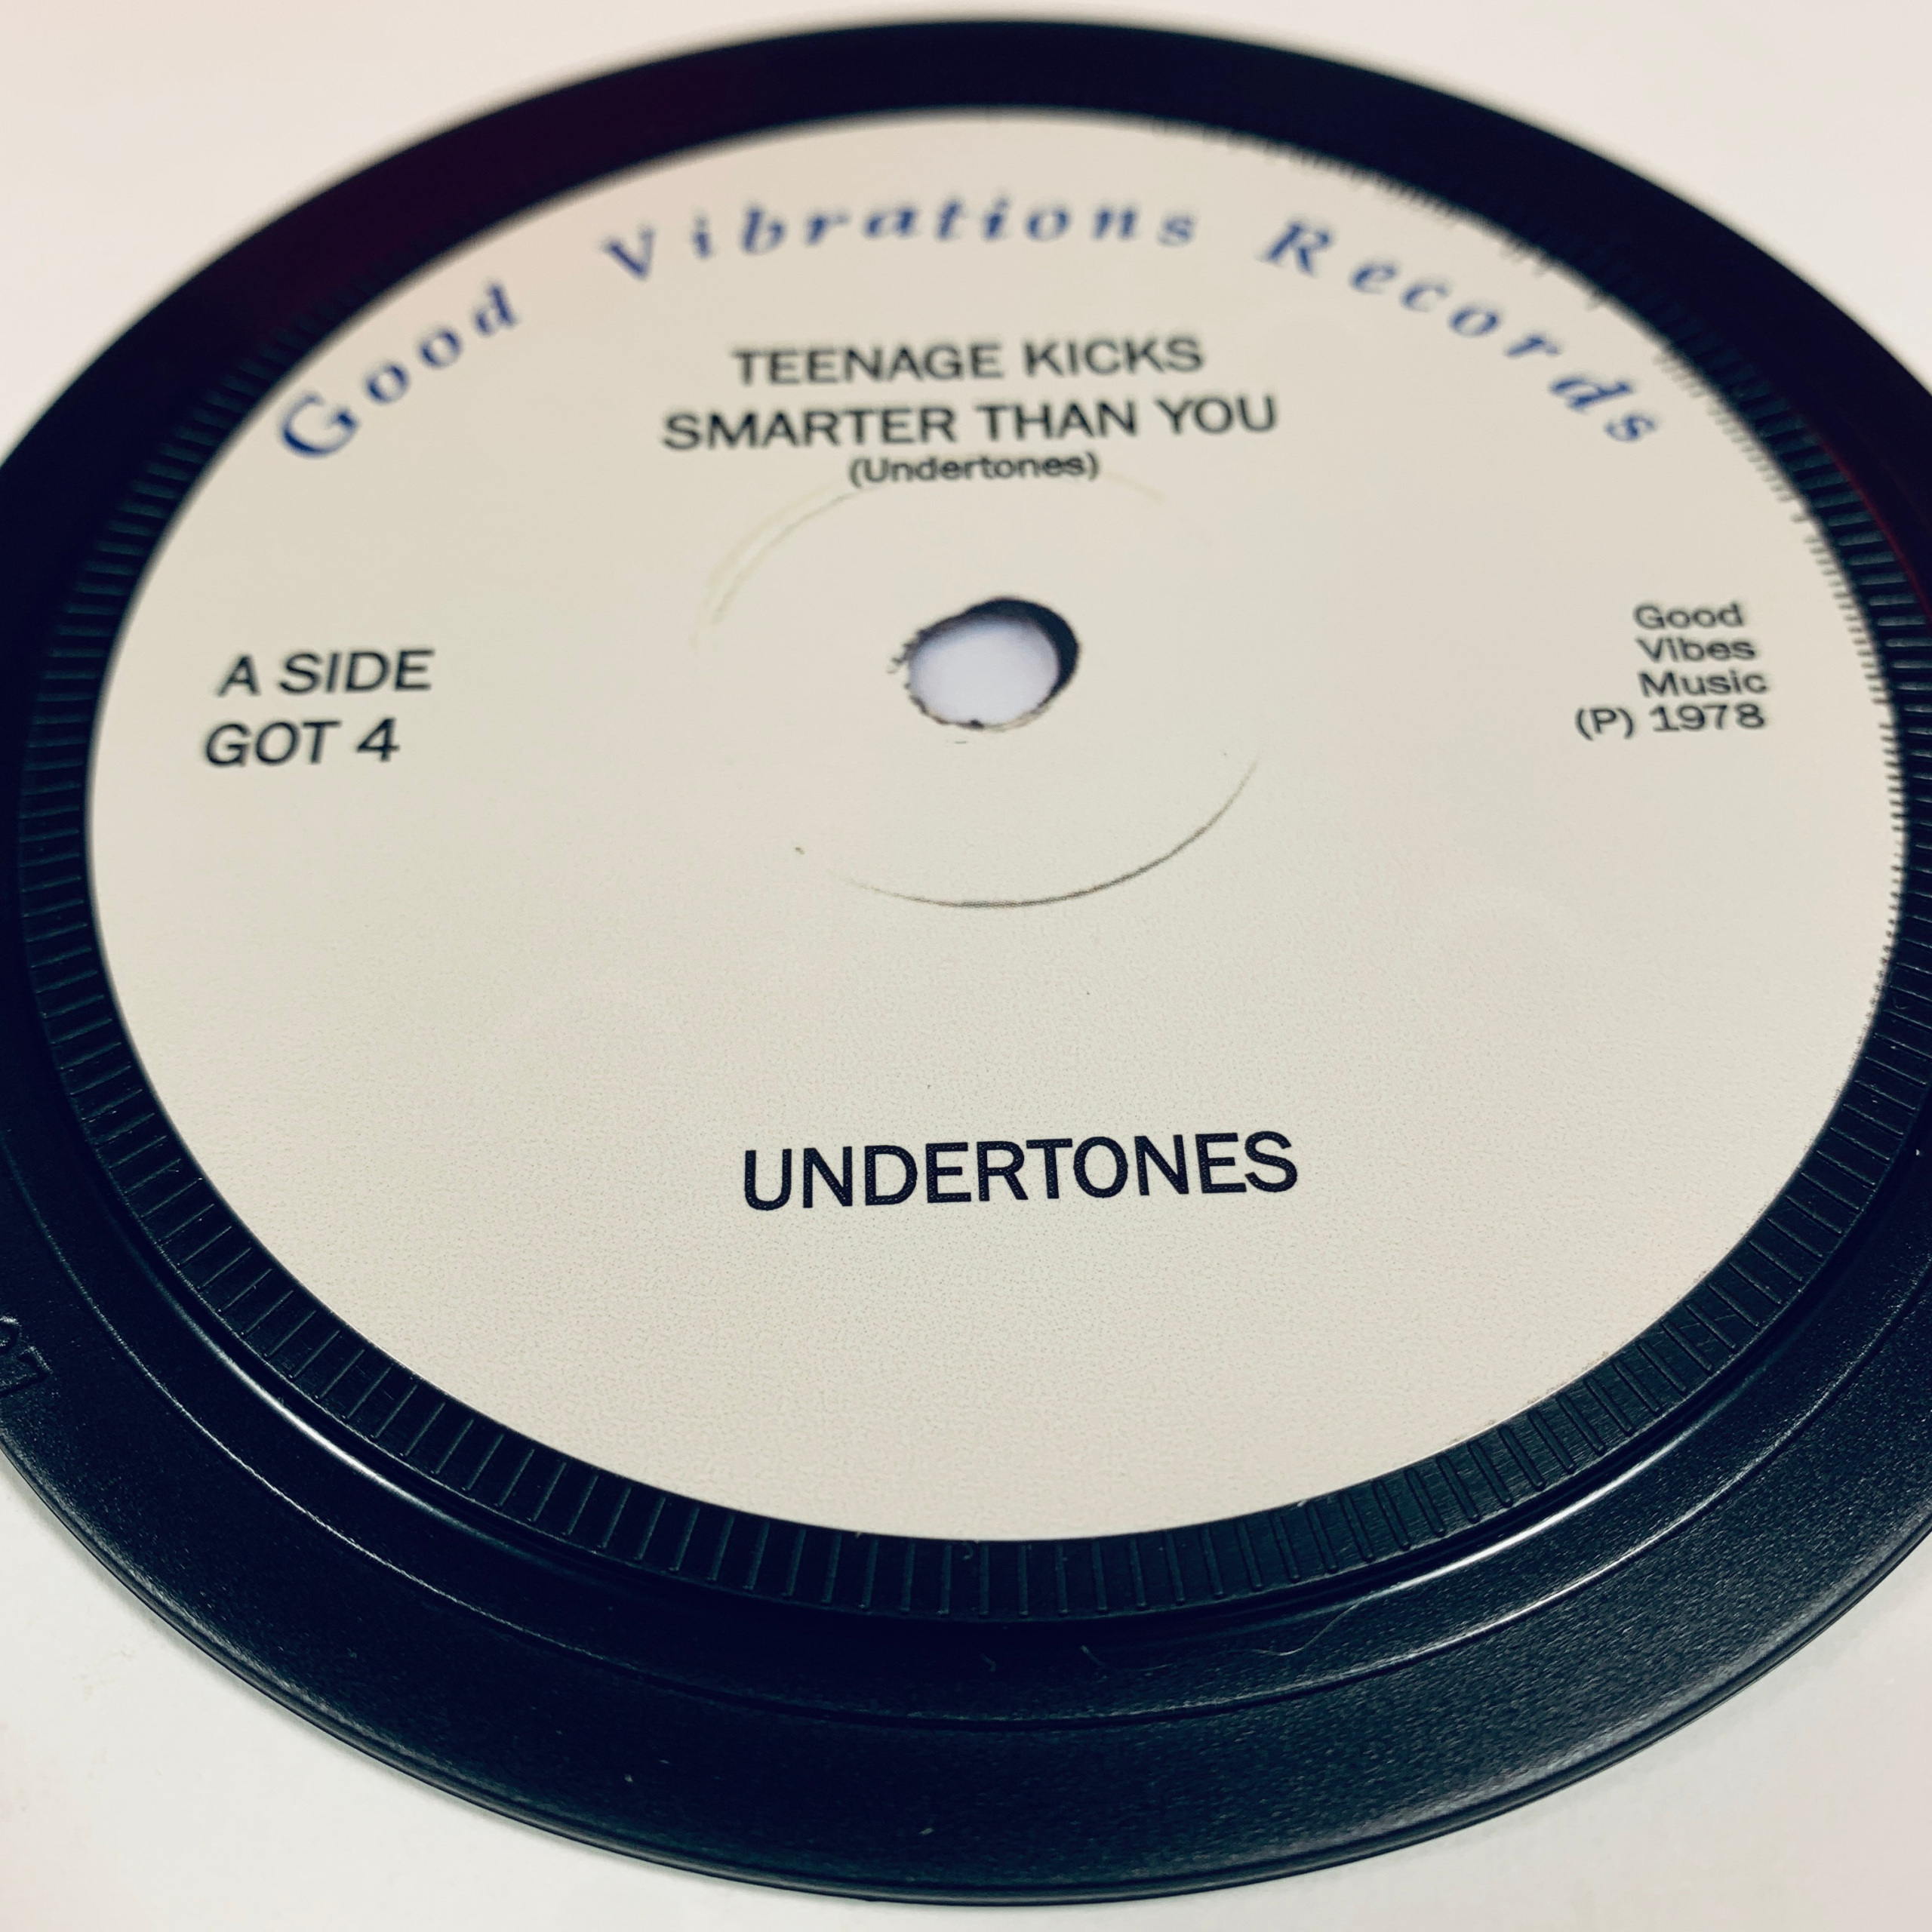 The Undertones - Teenage Kicks (coaster)